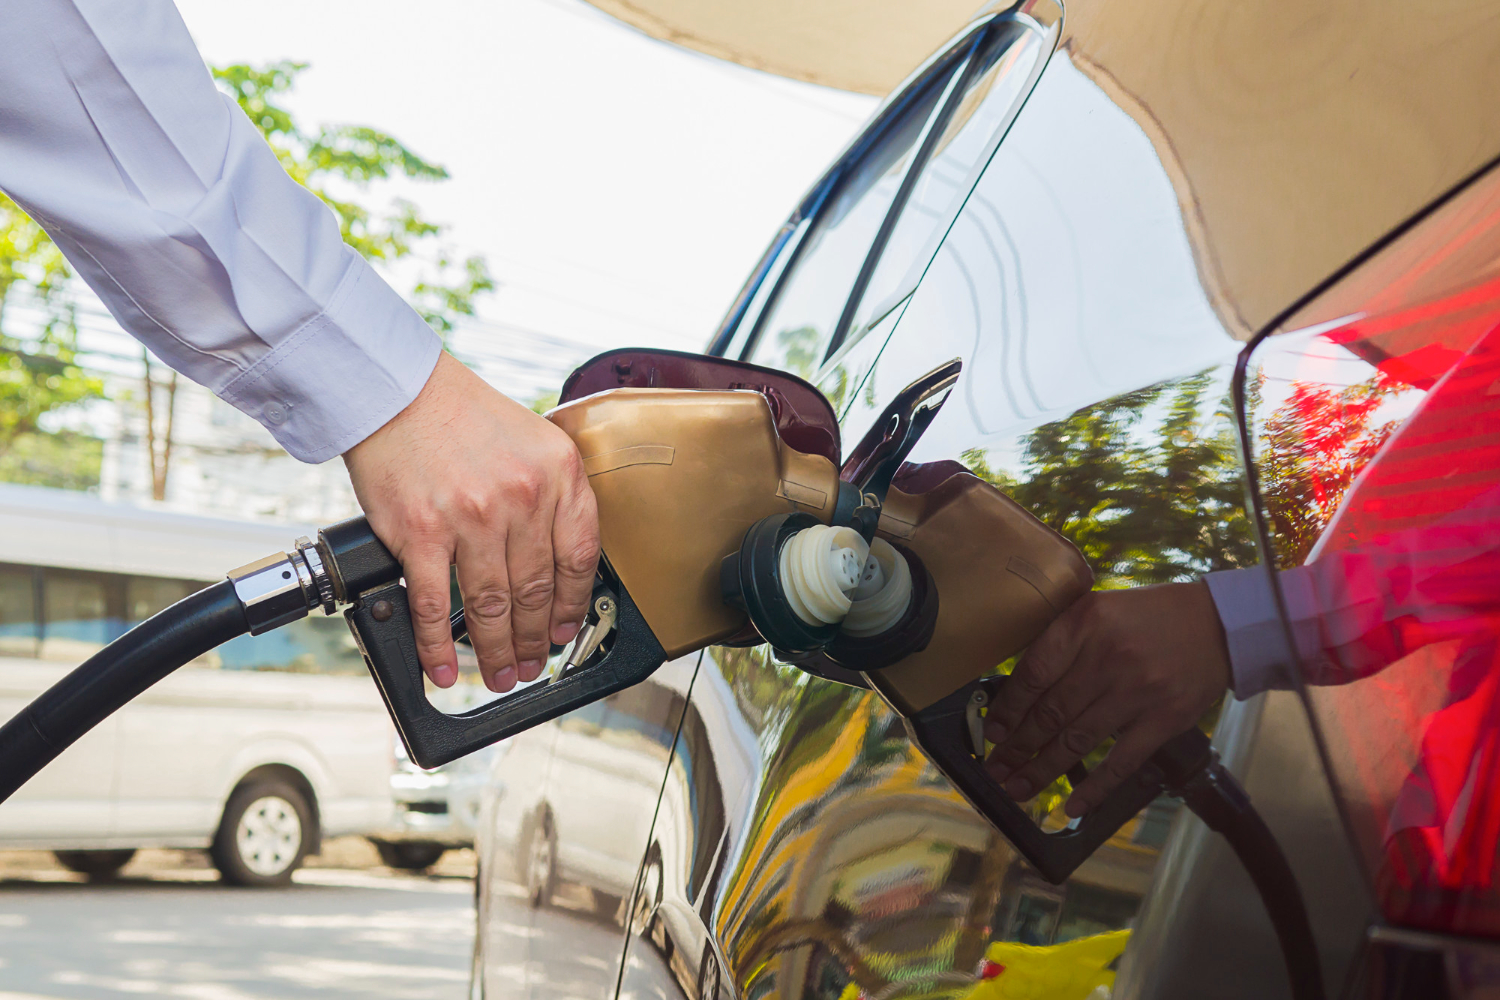 اقتصاد: زيادة مفاجئة لأسعار الوقود في اليمن